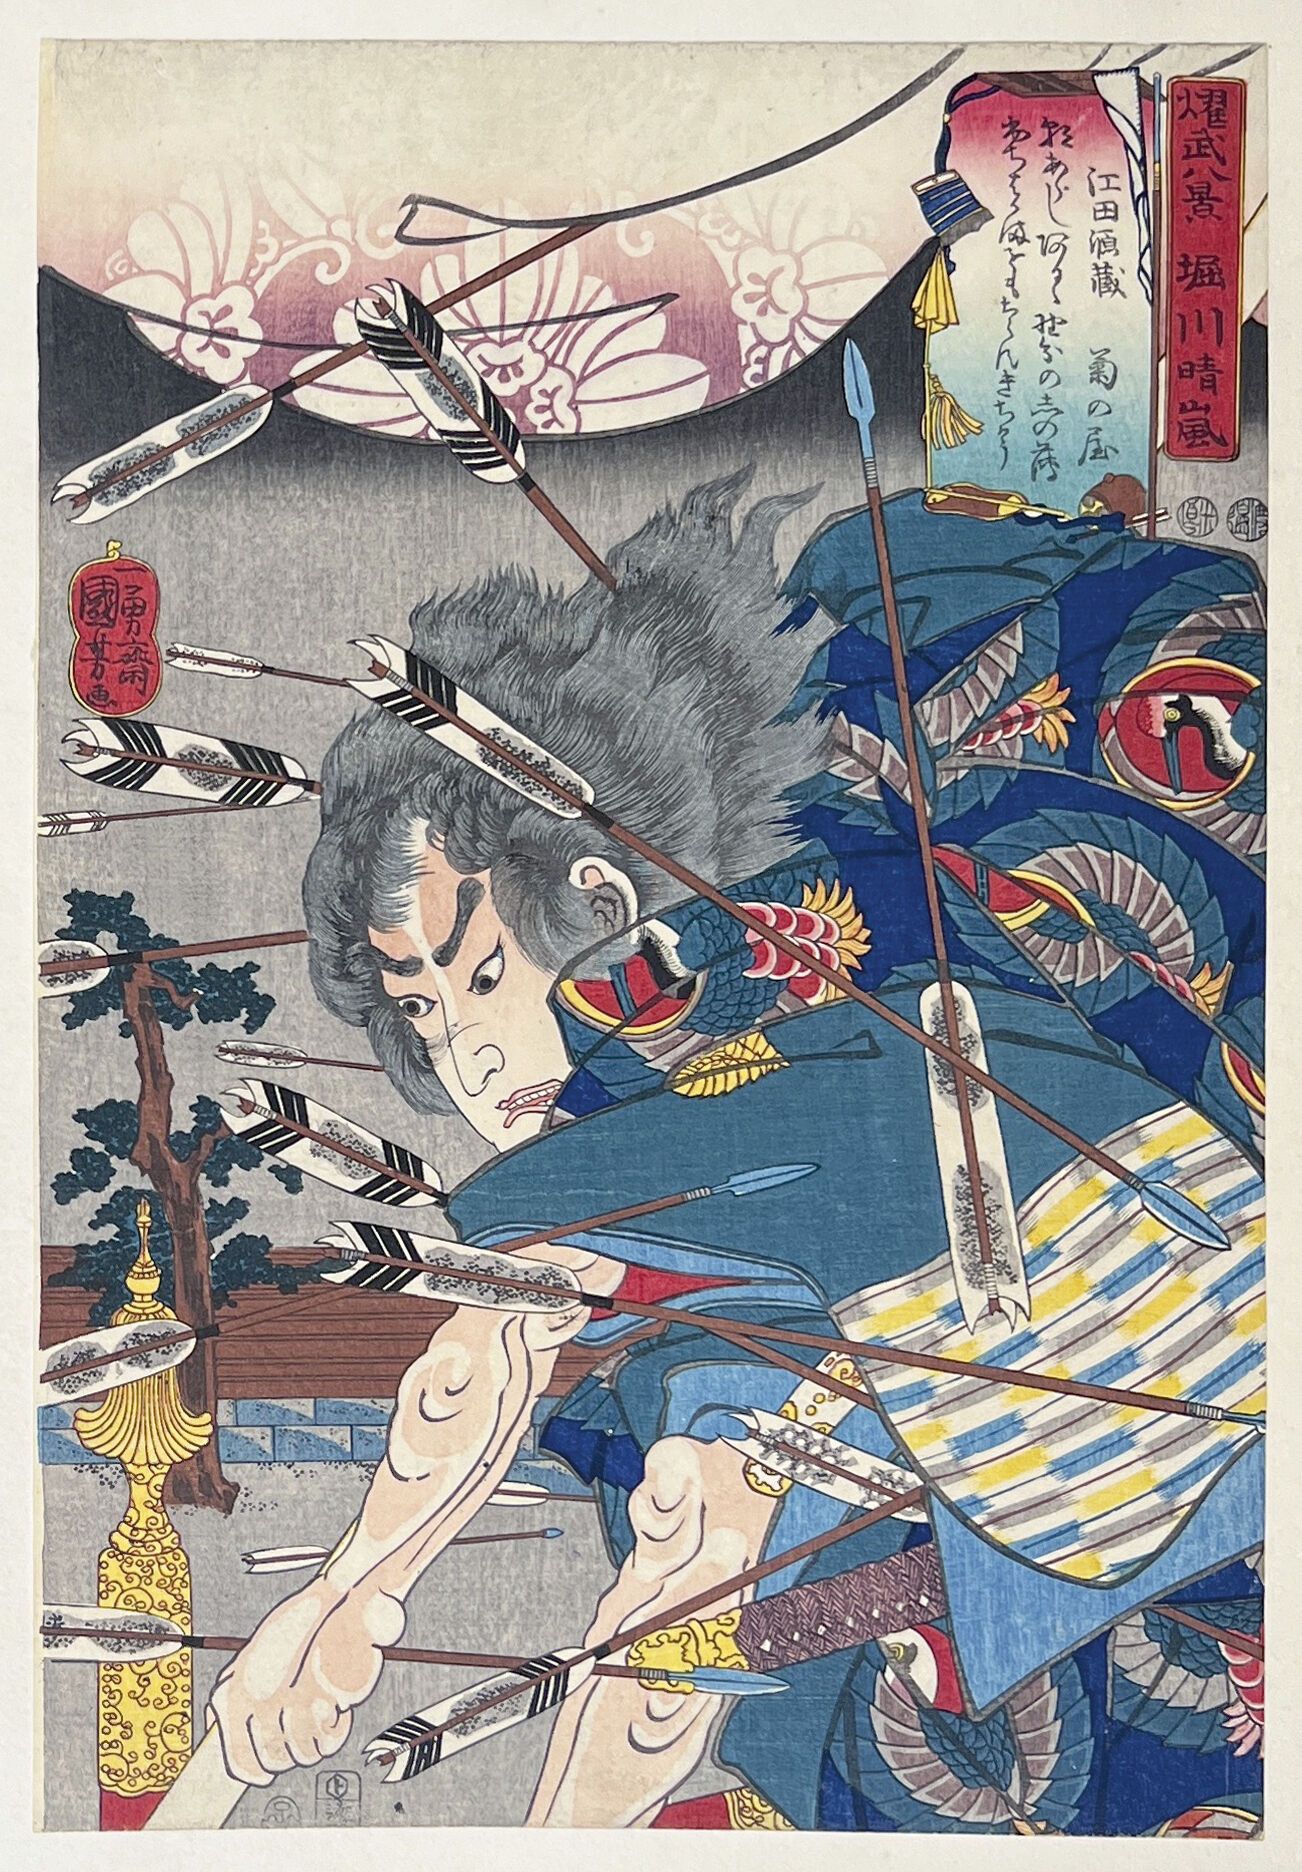 Null Utagawa Kuniyoshi (1797-1861)
Oban tate-e de la serie Yobu hakkei, Hazañas &hellip;